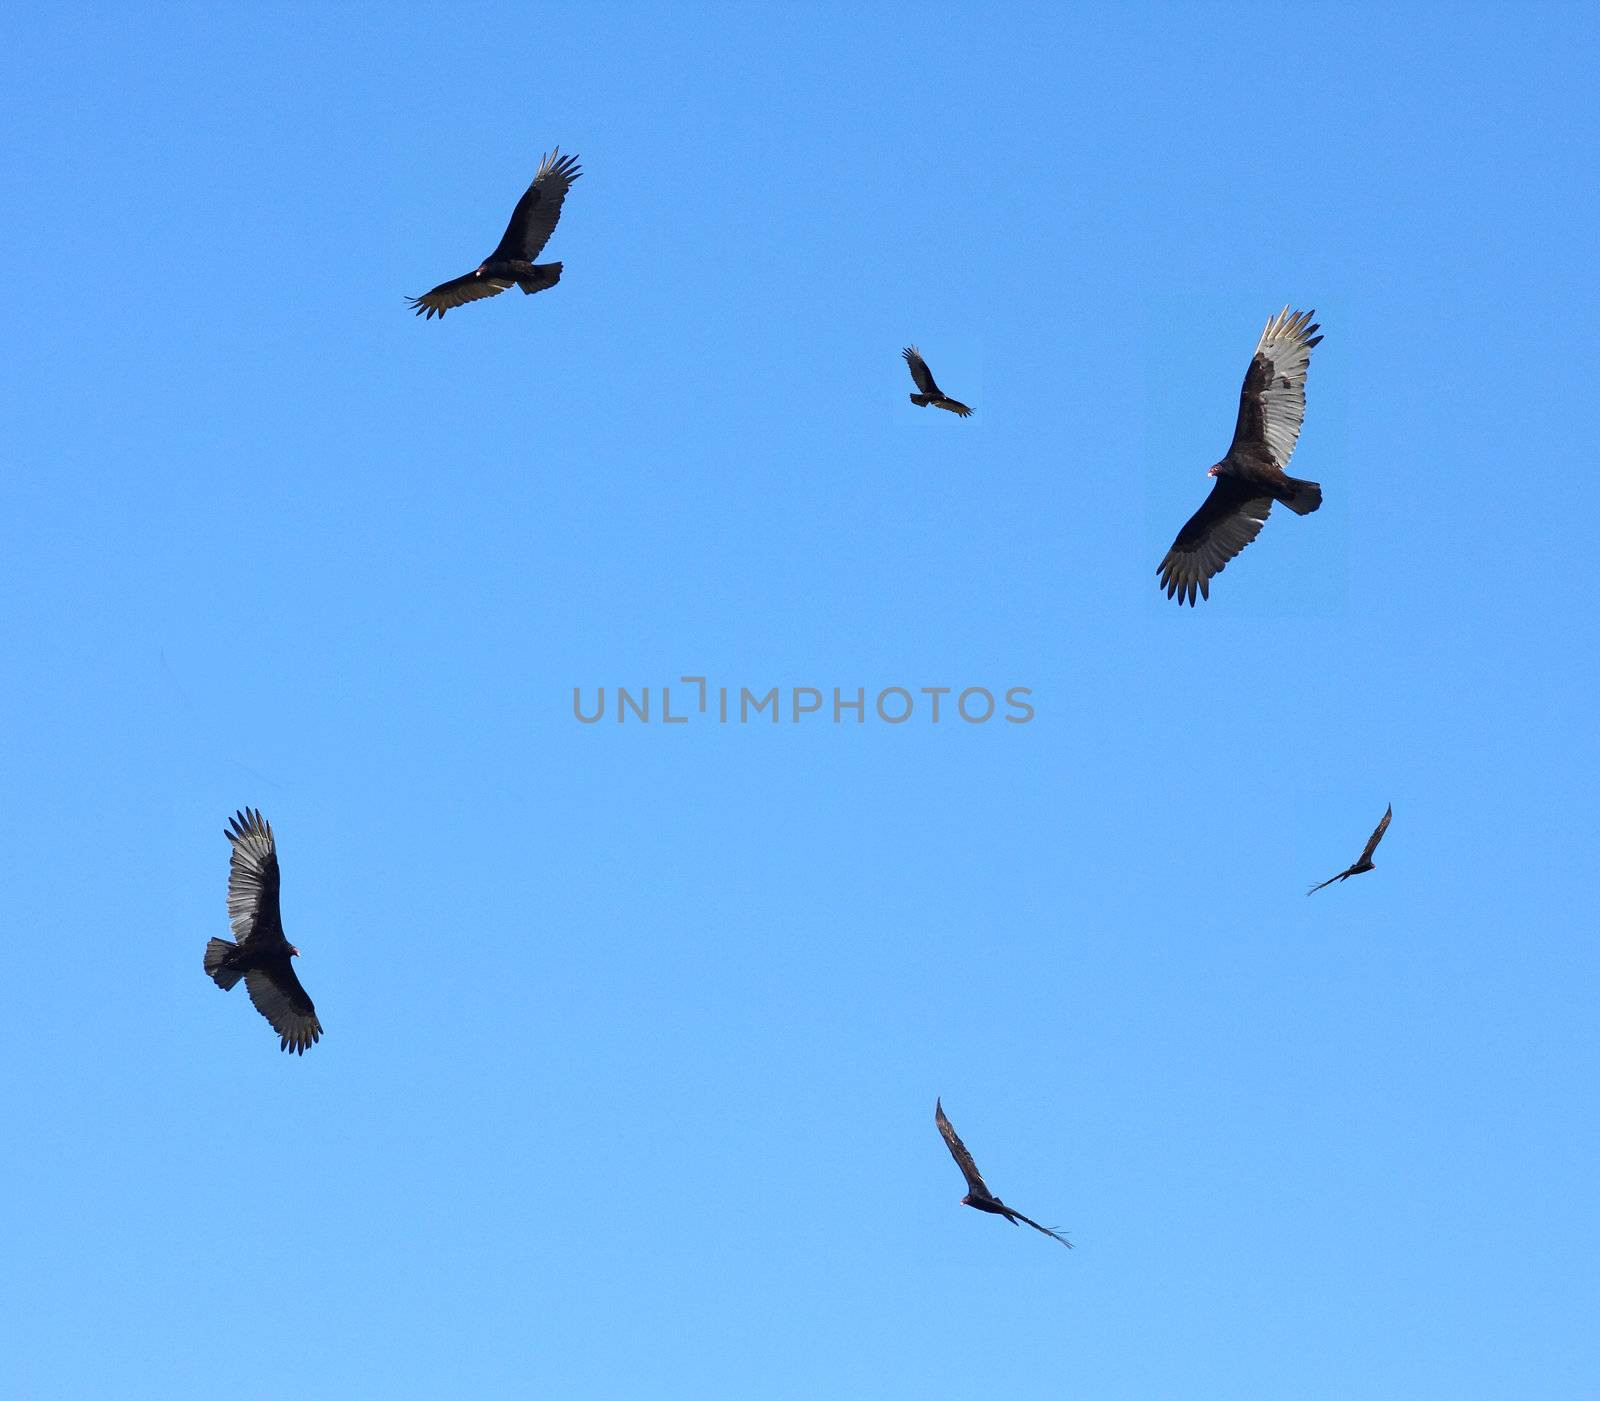 Turkey buzzards in flight by Geoarts